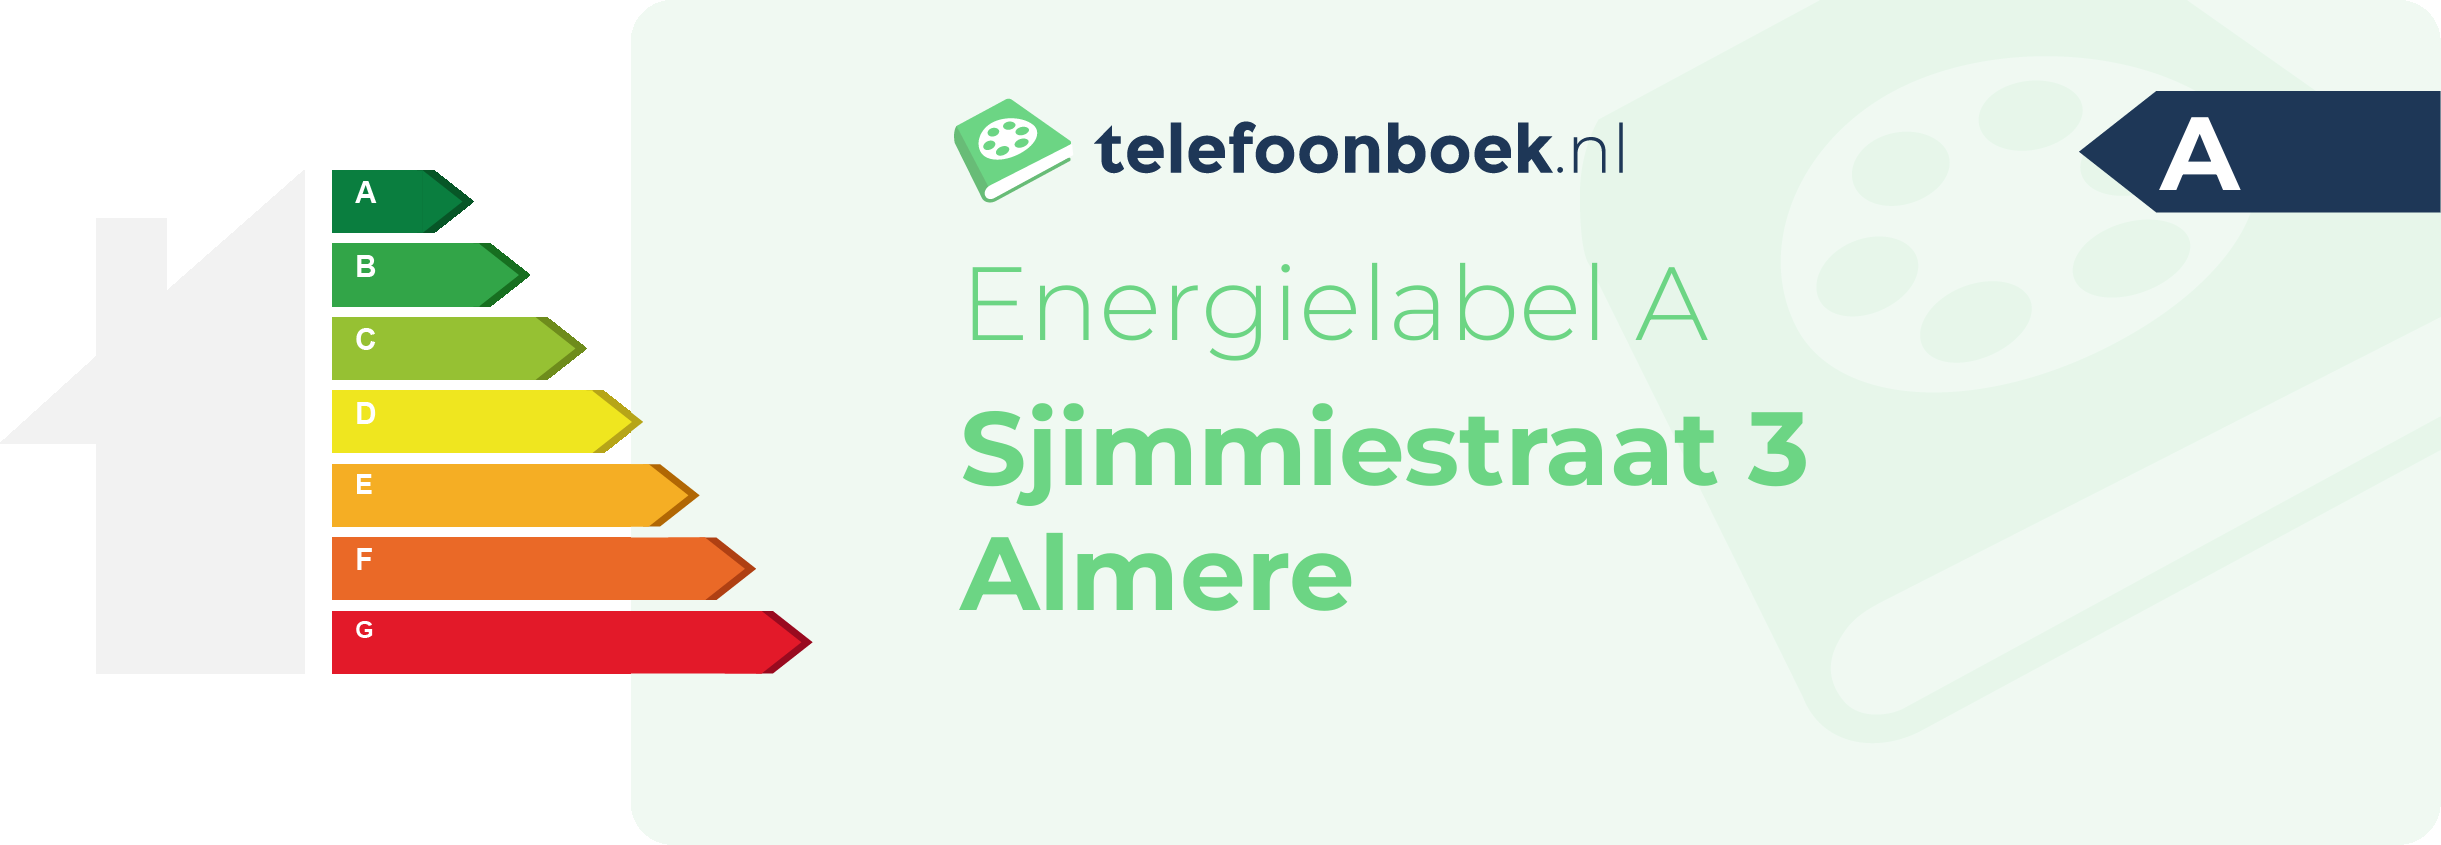 Energielabel Sjimmiestraat 3 Almere